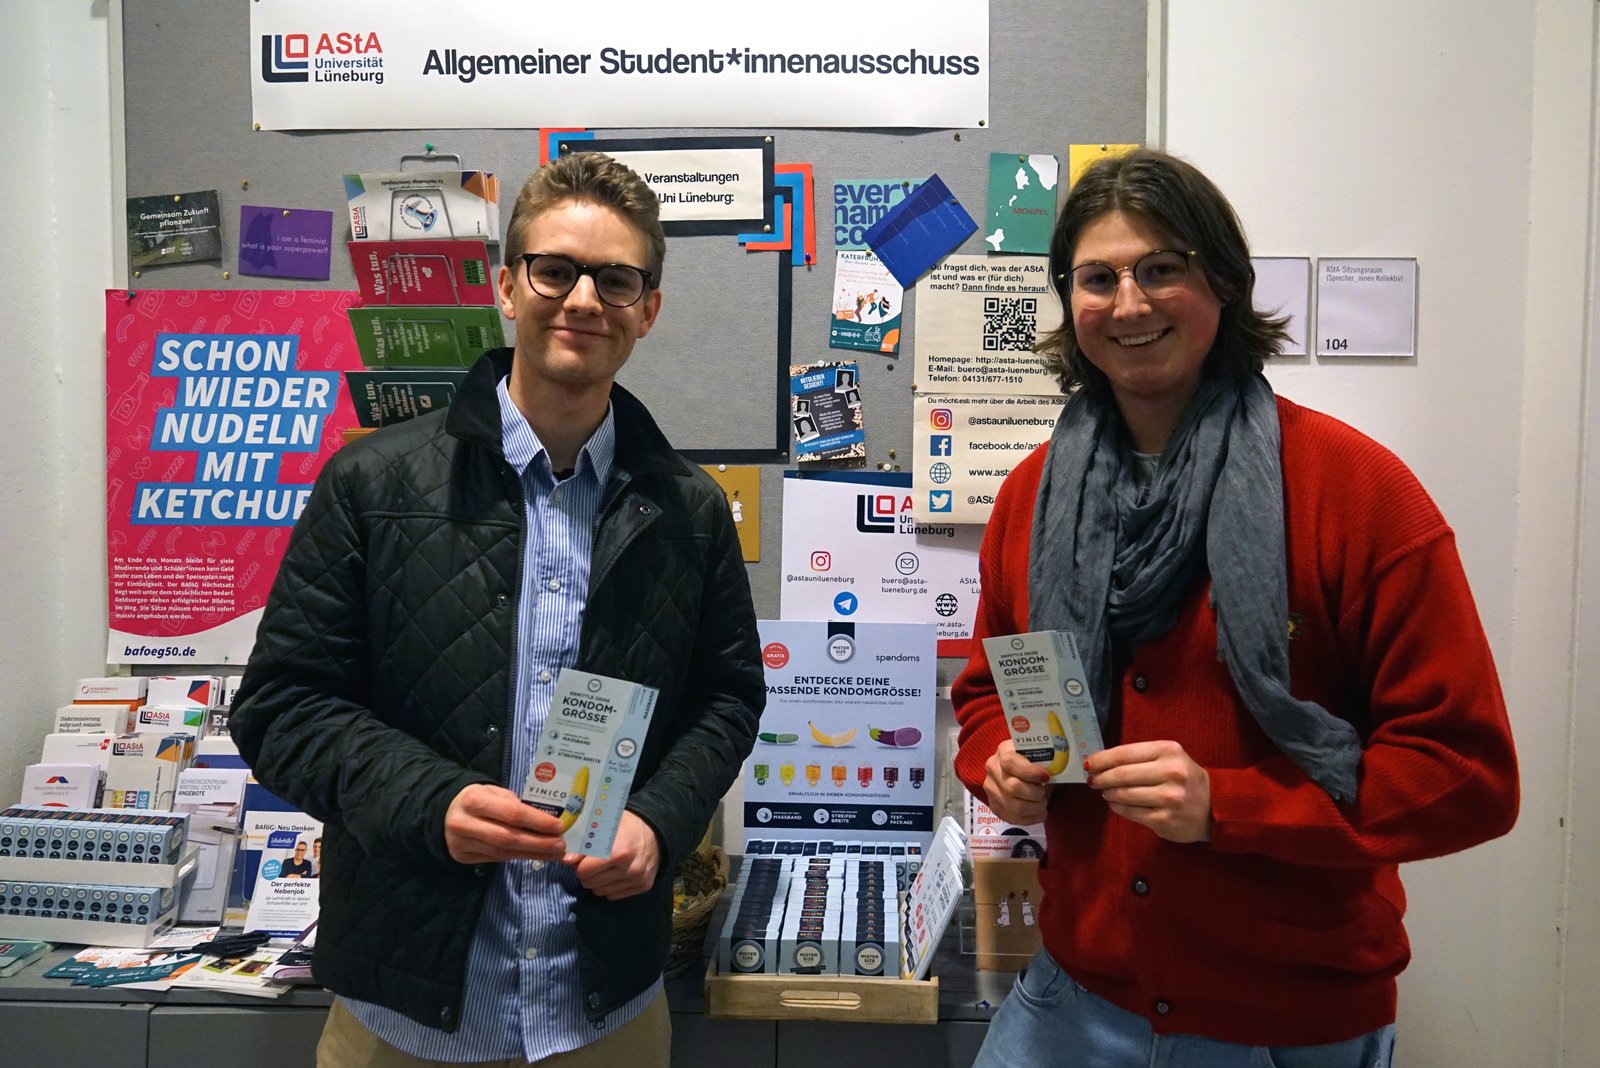 Luis Spondomsista (vasemmalla) avaa ilmaisen kondomiannostelijan yhdessä Maxin kanssa Leuphana University Lüneburgin AStA:sta (oikealla).